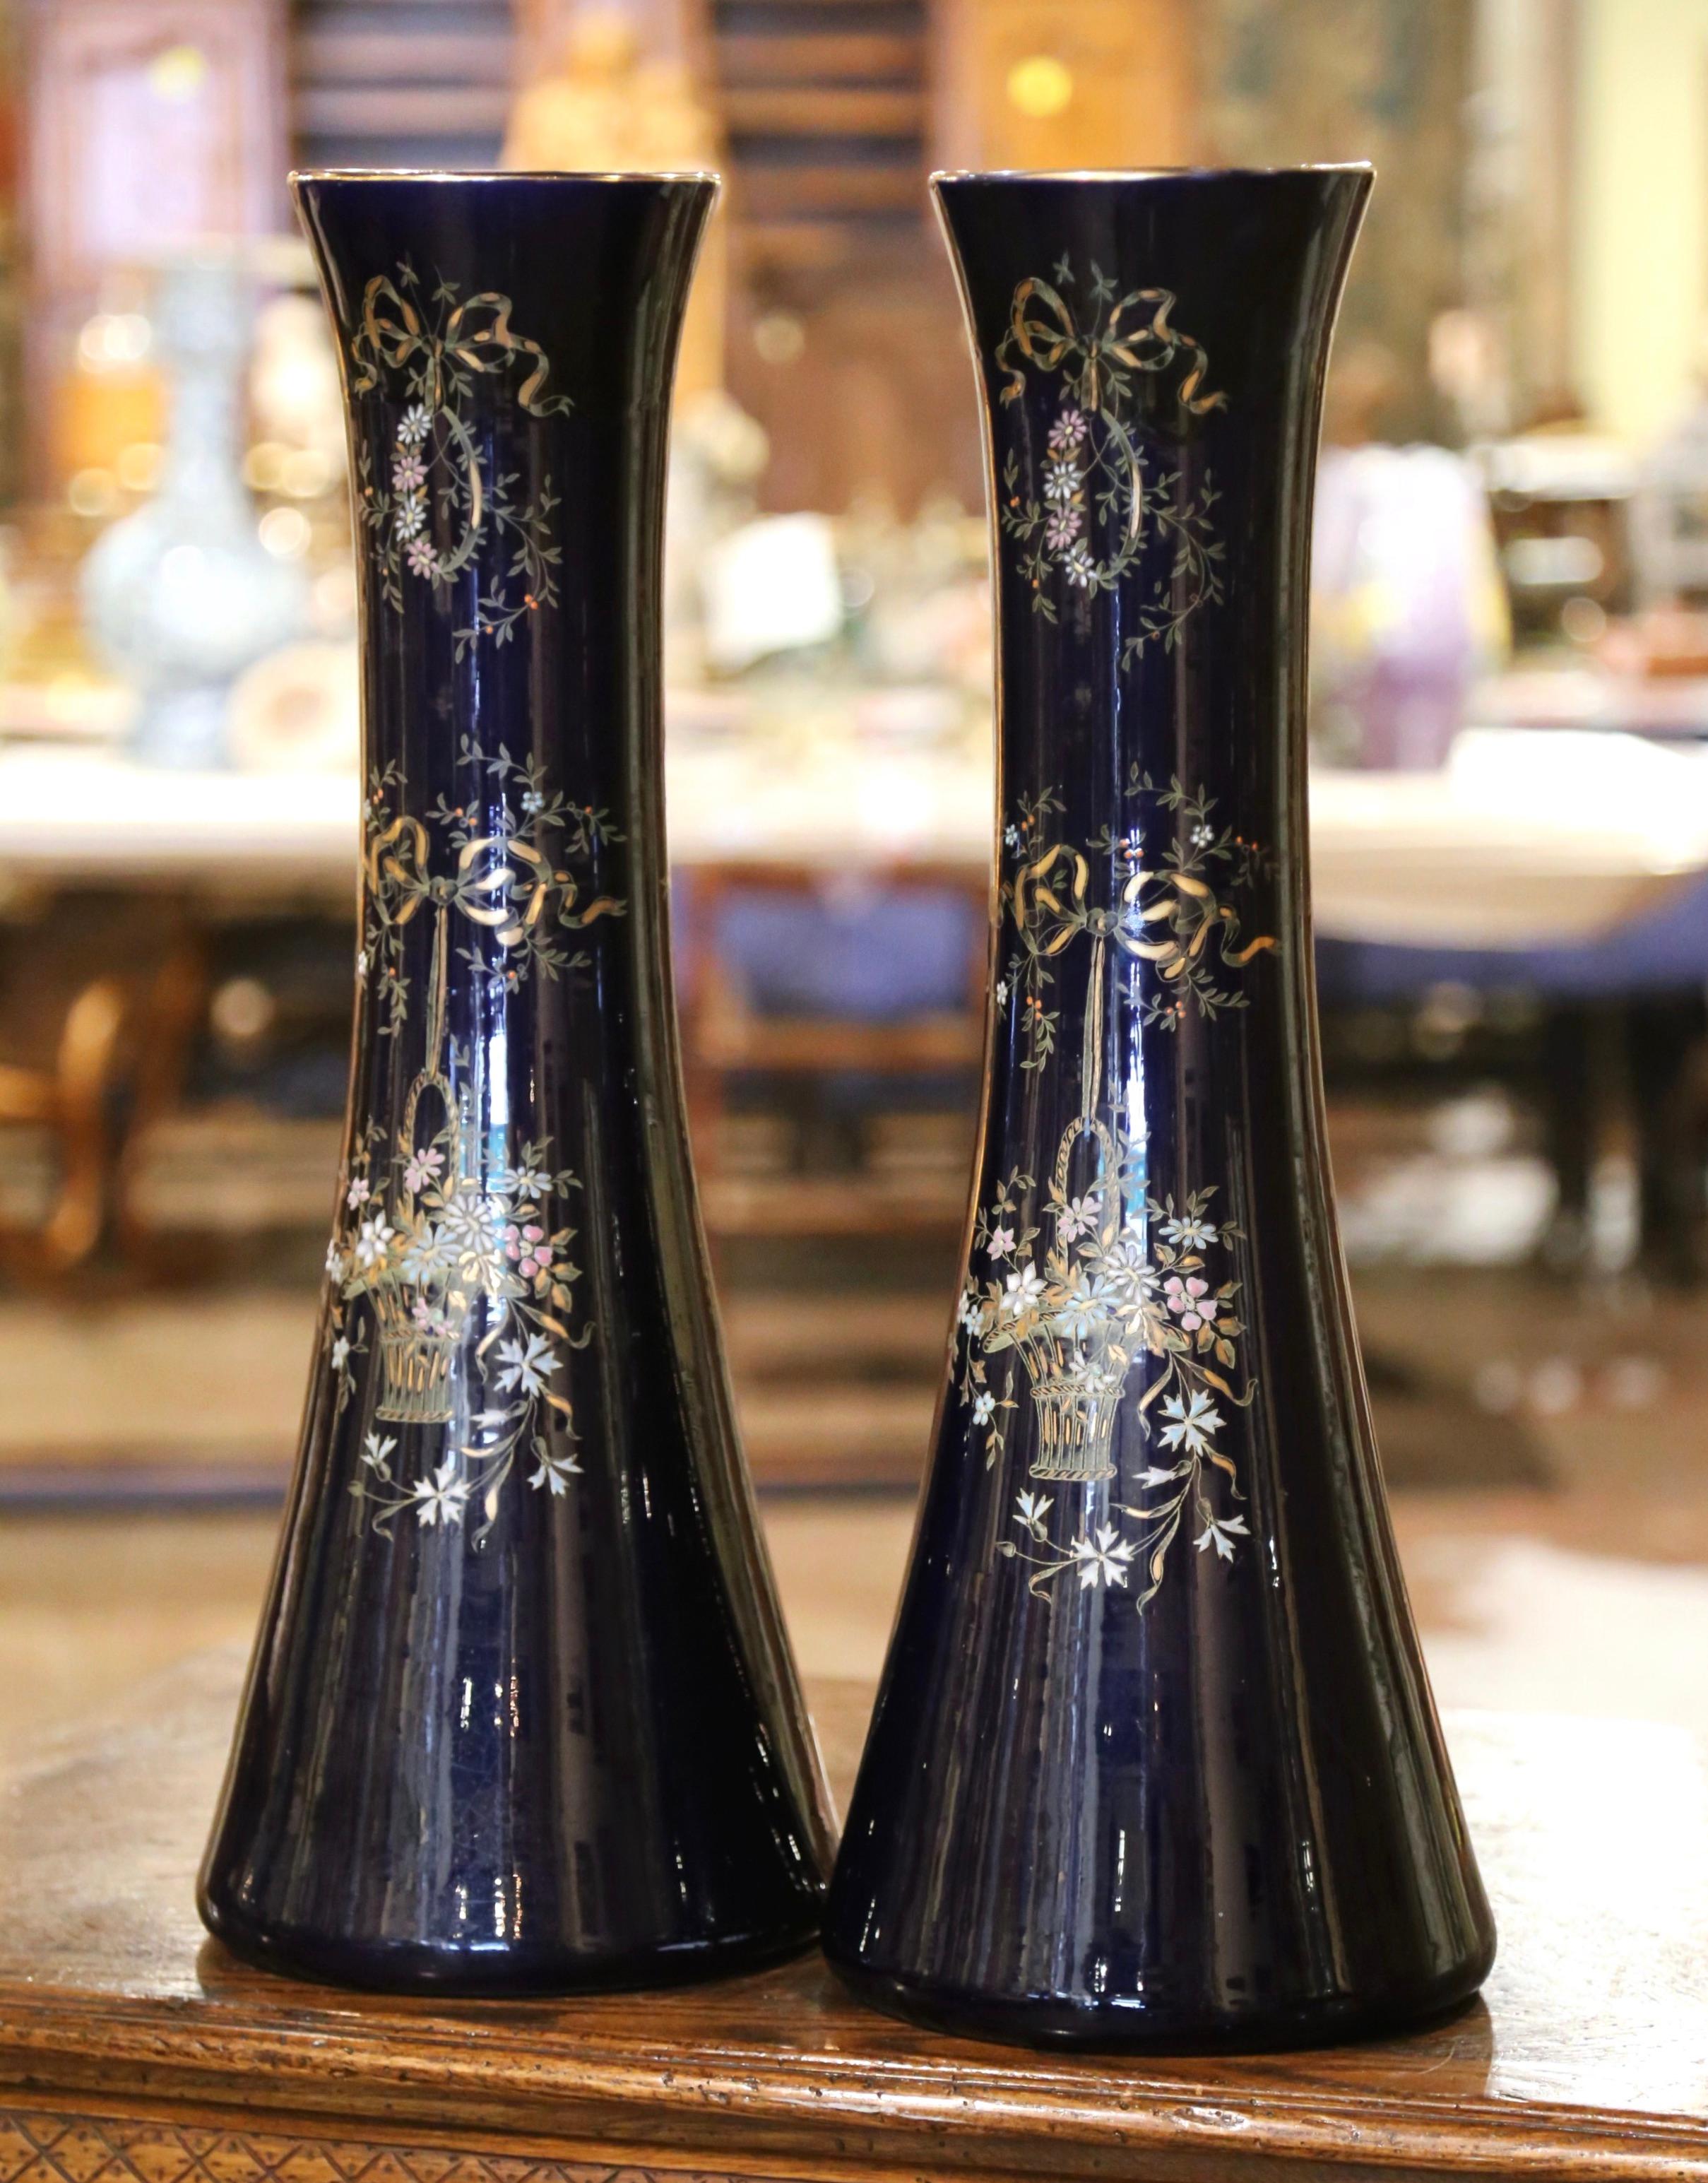 Décorez une console ou un buffet avec cette élégante paire de vases anciens de Paris. Fabriqués vers 1890, ces grands récipients néoclassiques présentent un long col convexe s'étendant sur une base circulaire. Chaque urne est dorée et peinte à la